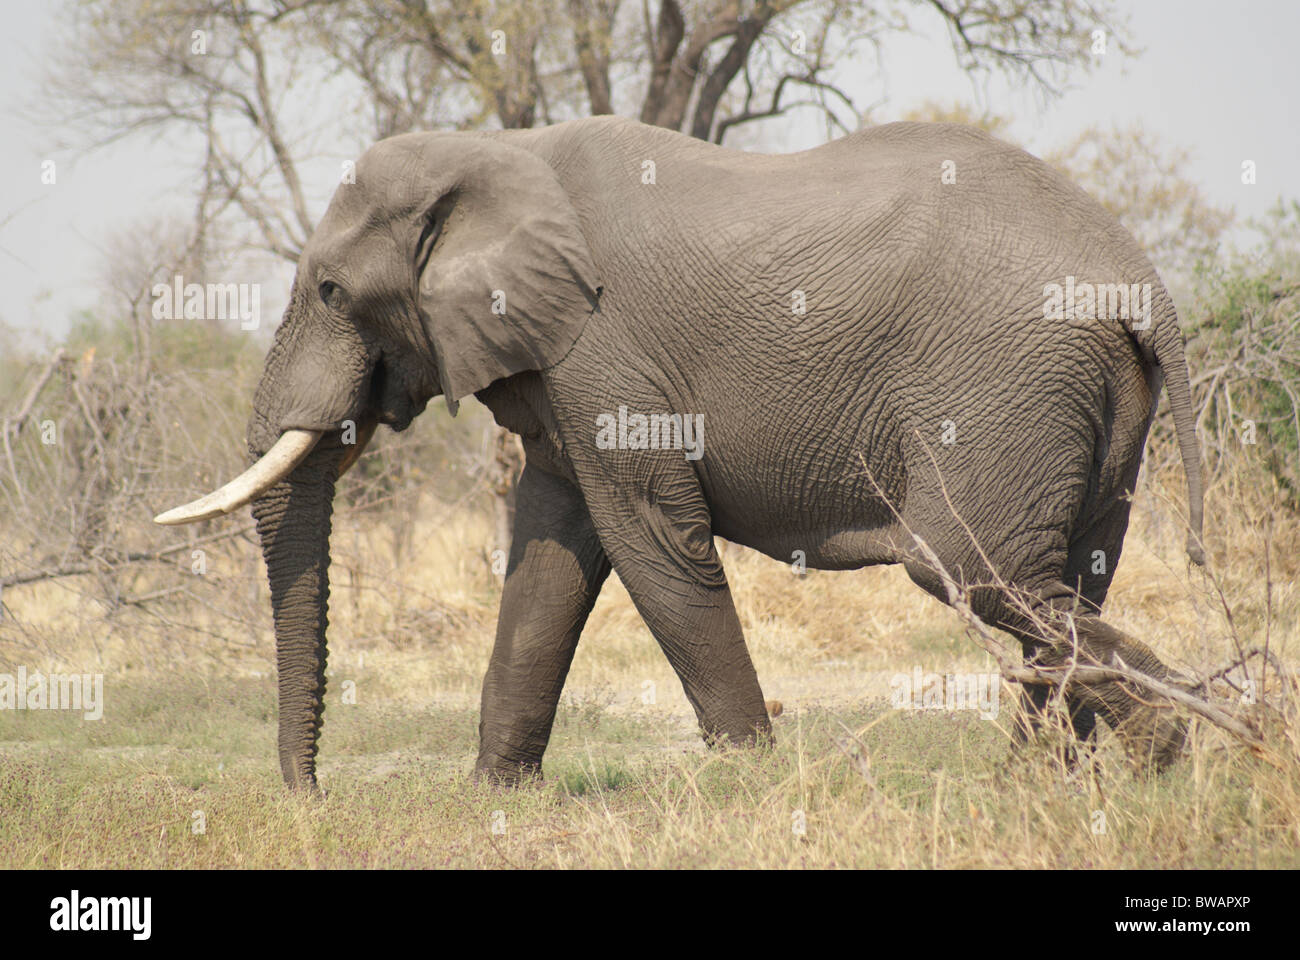 Large Elephant bull walking Stock Photo